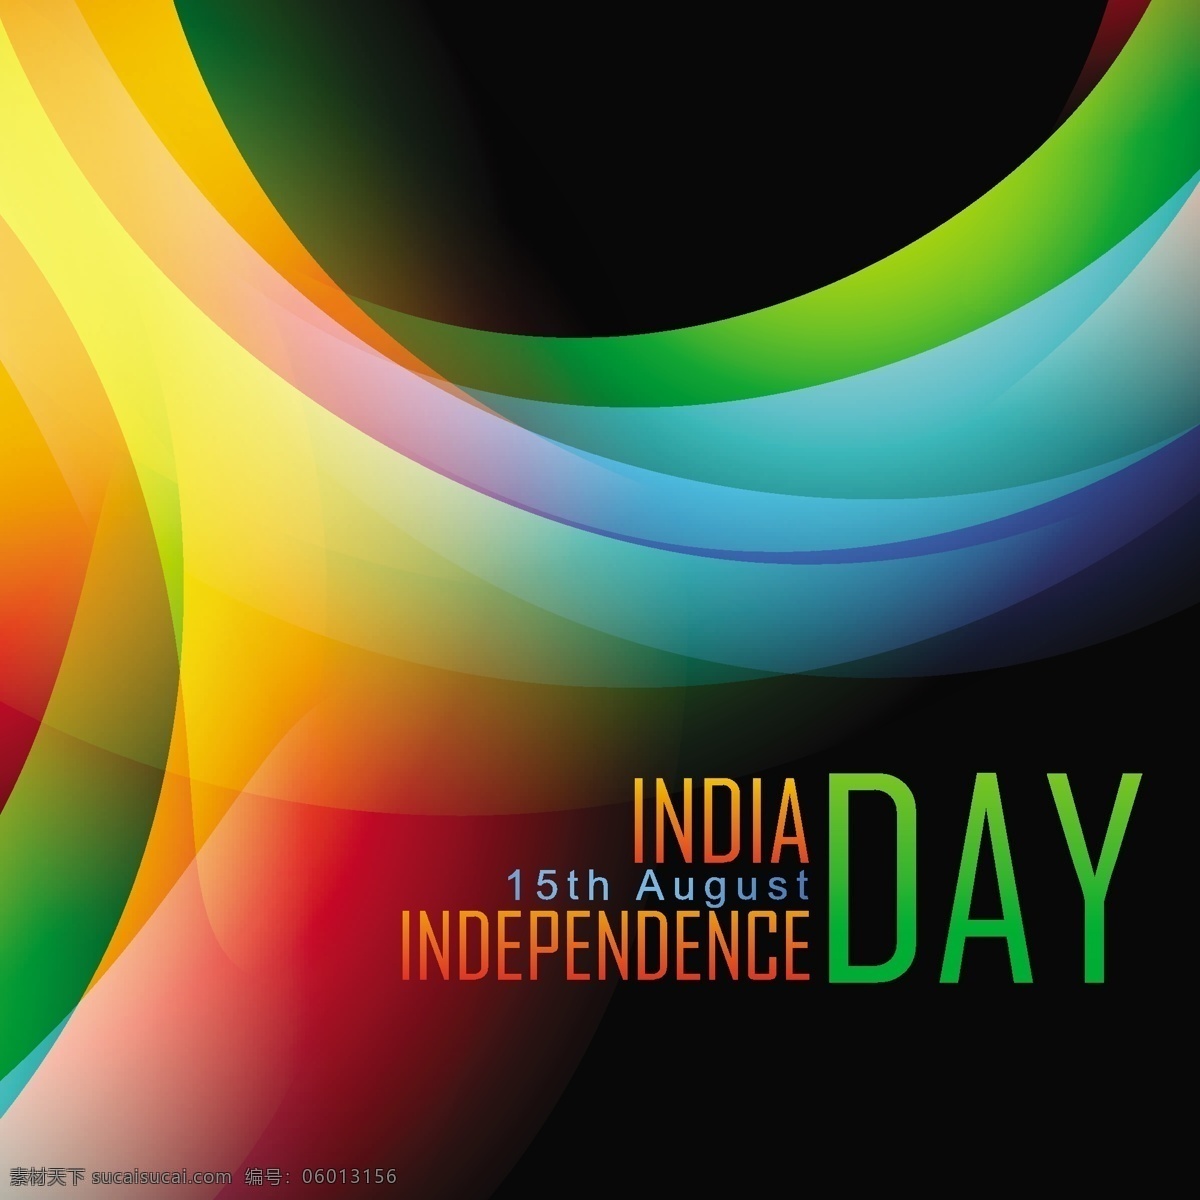 印度 独立日 背景 丰富多彩 摘要背景壁纸 庆典活动 晚会 概念与思想 设计元素 模板和模型